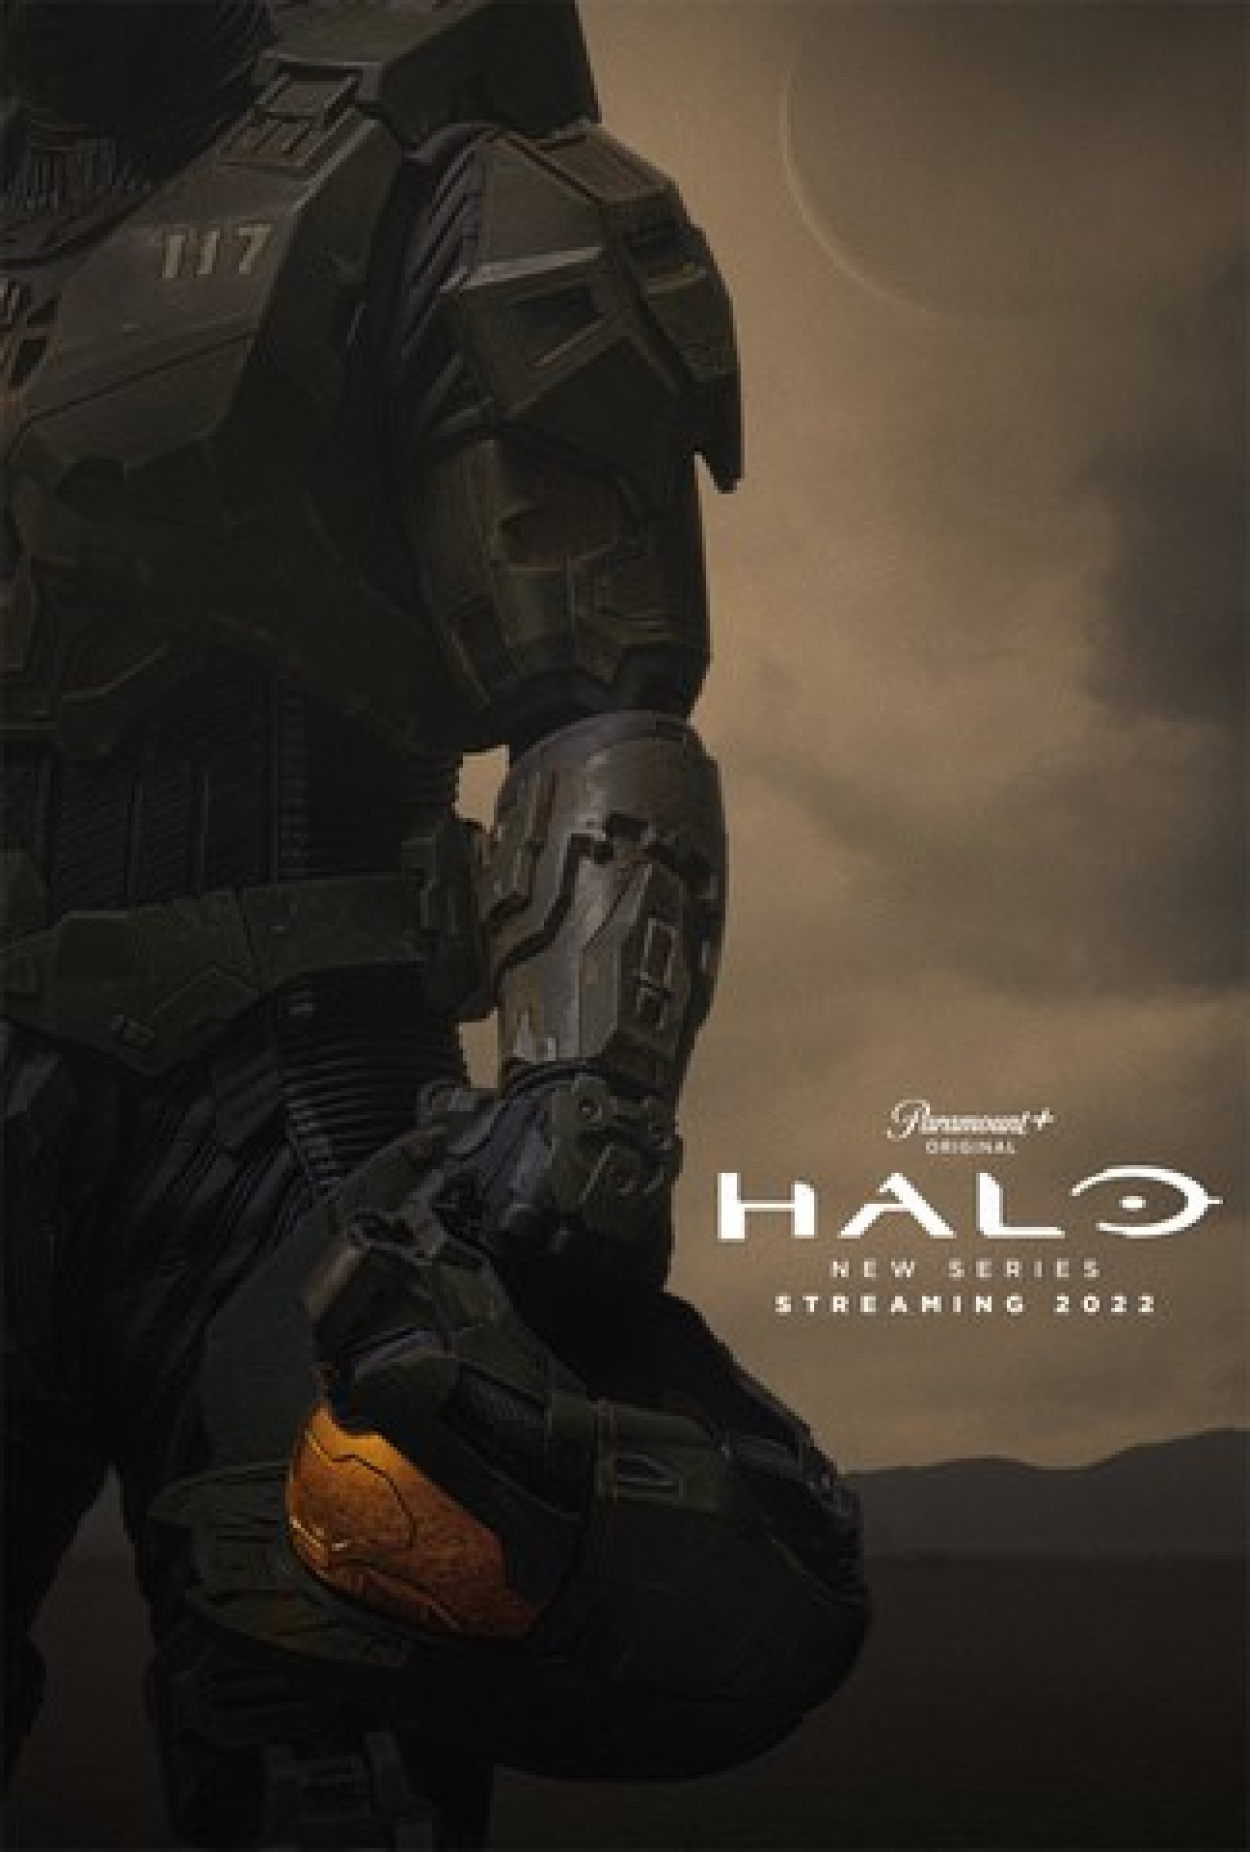 Assistir Halo Temporada 1 Episódio 1: Halo - Contato - Série